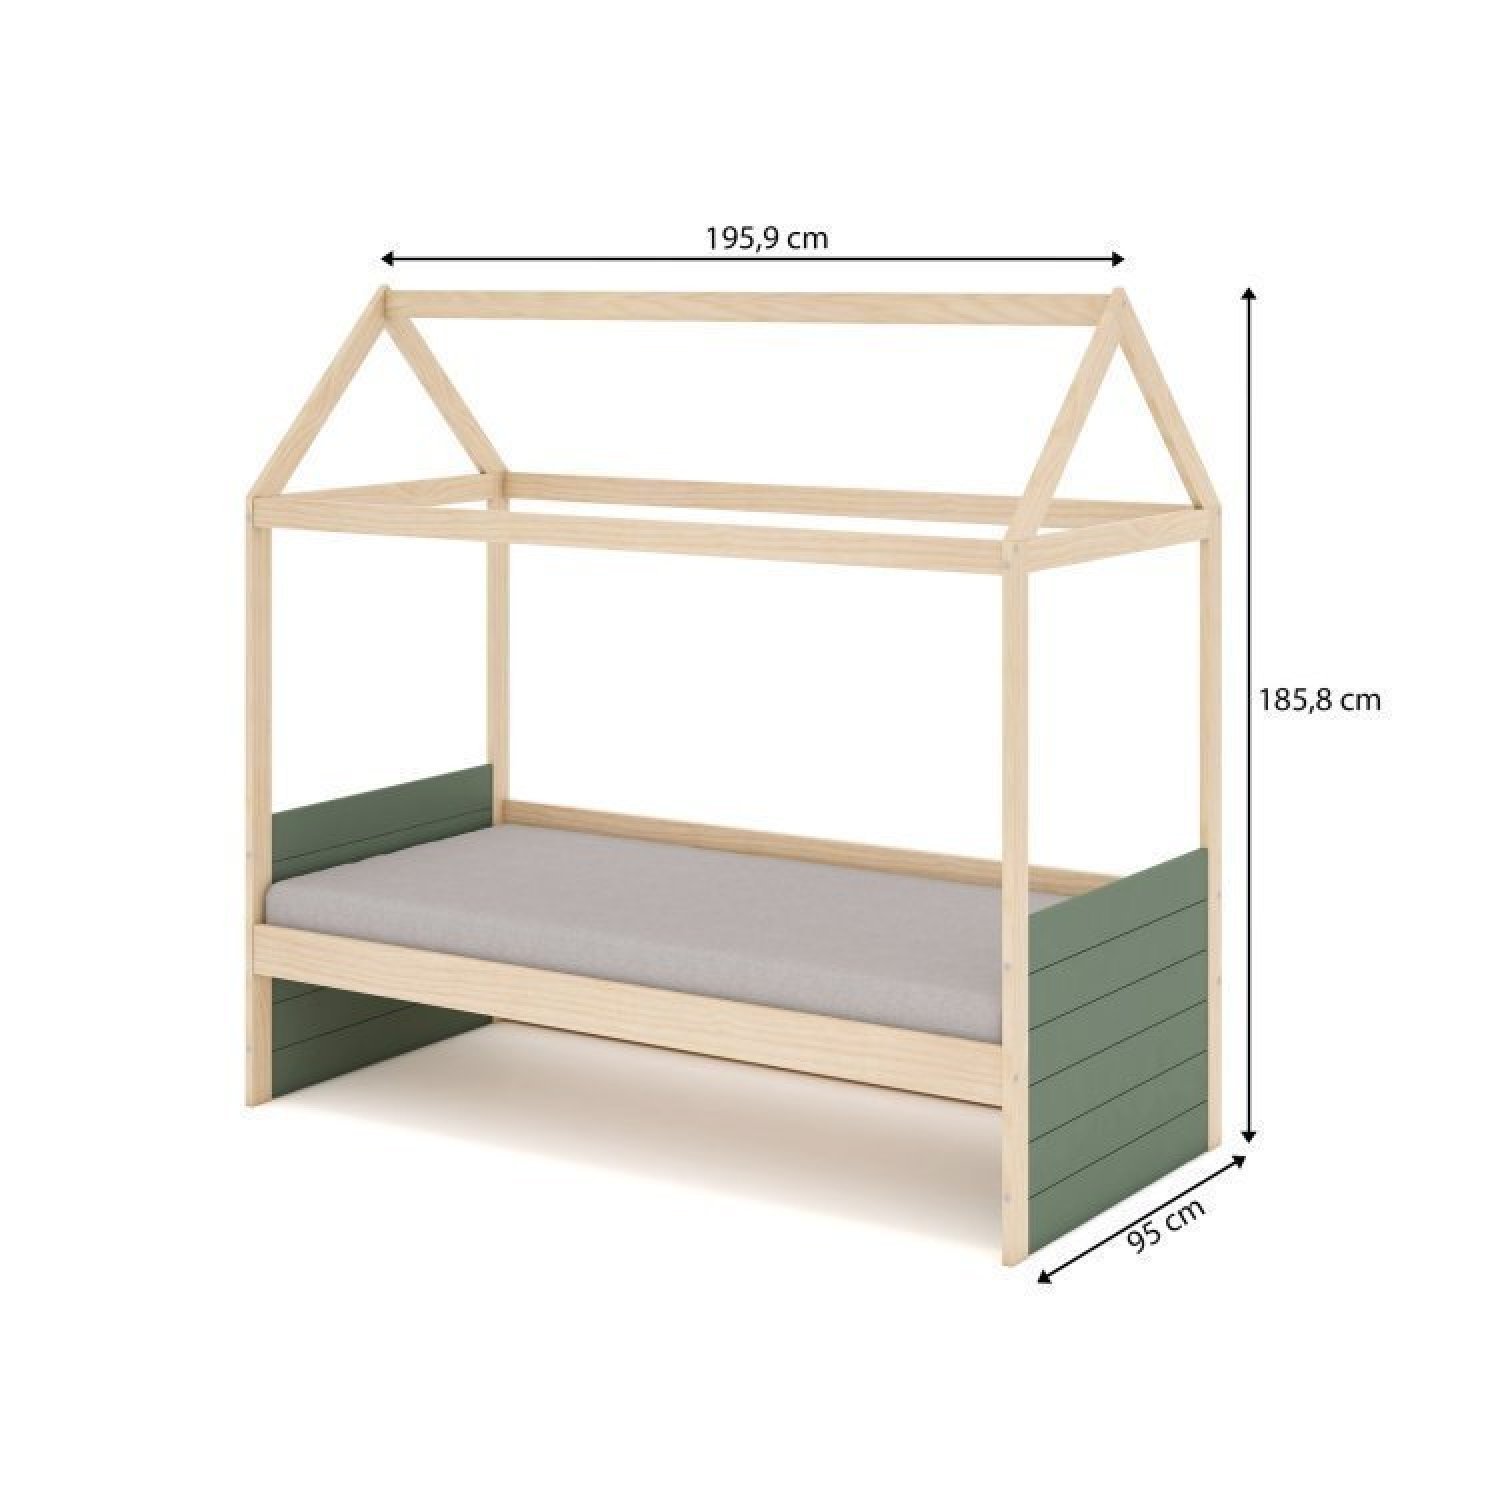 Bicama Solteiro Infantil Reversível Telhado Completo Casinha Garden Casatema - 10